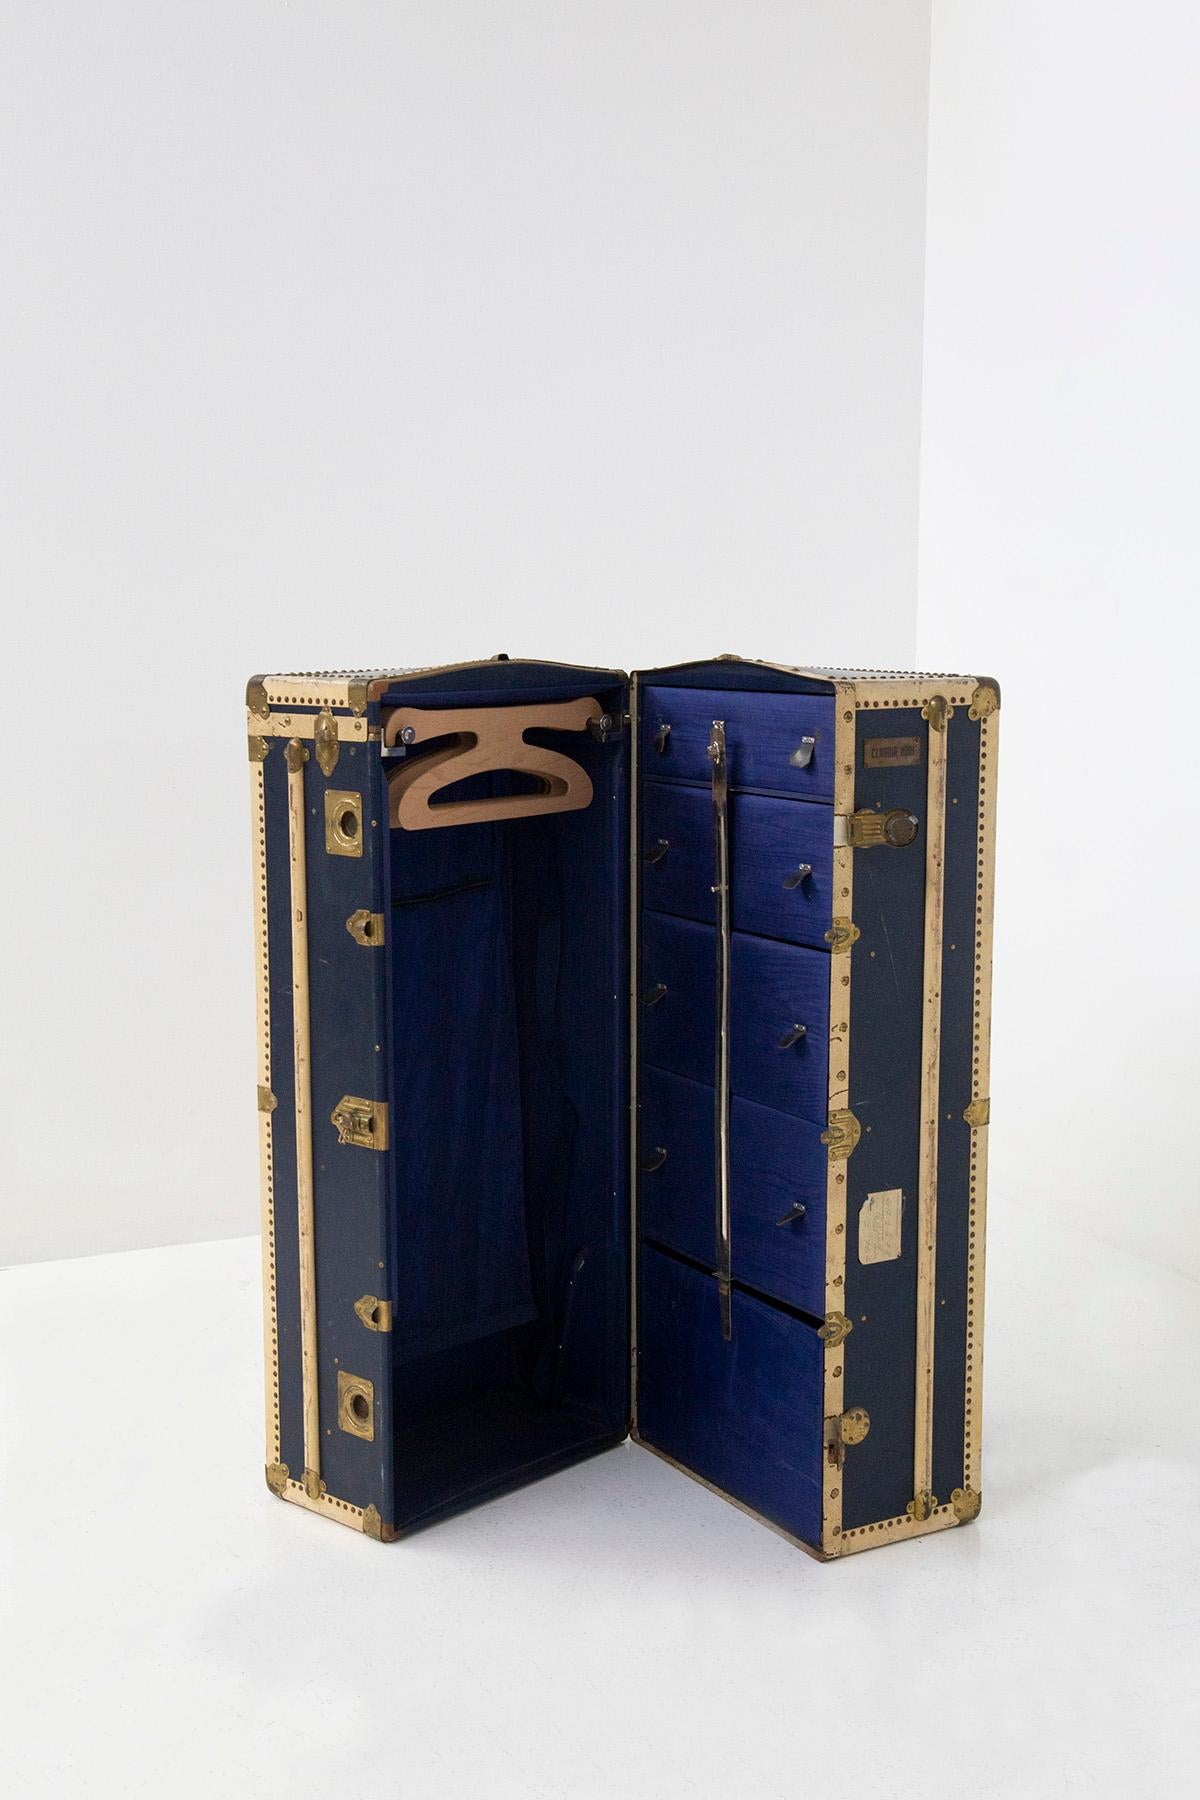 Eleganter Reisekoffer aus den italienischen 1950er Jahren. Der Koffer ist in ausgezeichnetem Zustand und besteht aus blau gegerbtem Leder und beigen Ledereinsätzen. Im Kofferraum finden wir Messingeinsätze und -verzierungen. Der Kofferraum trägt das